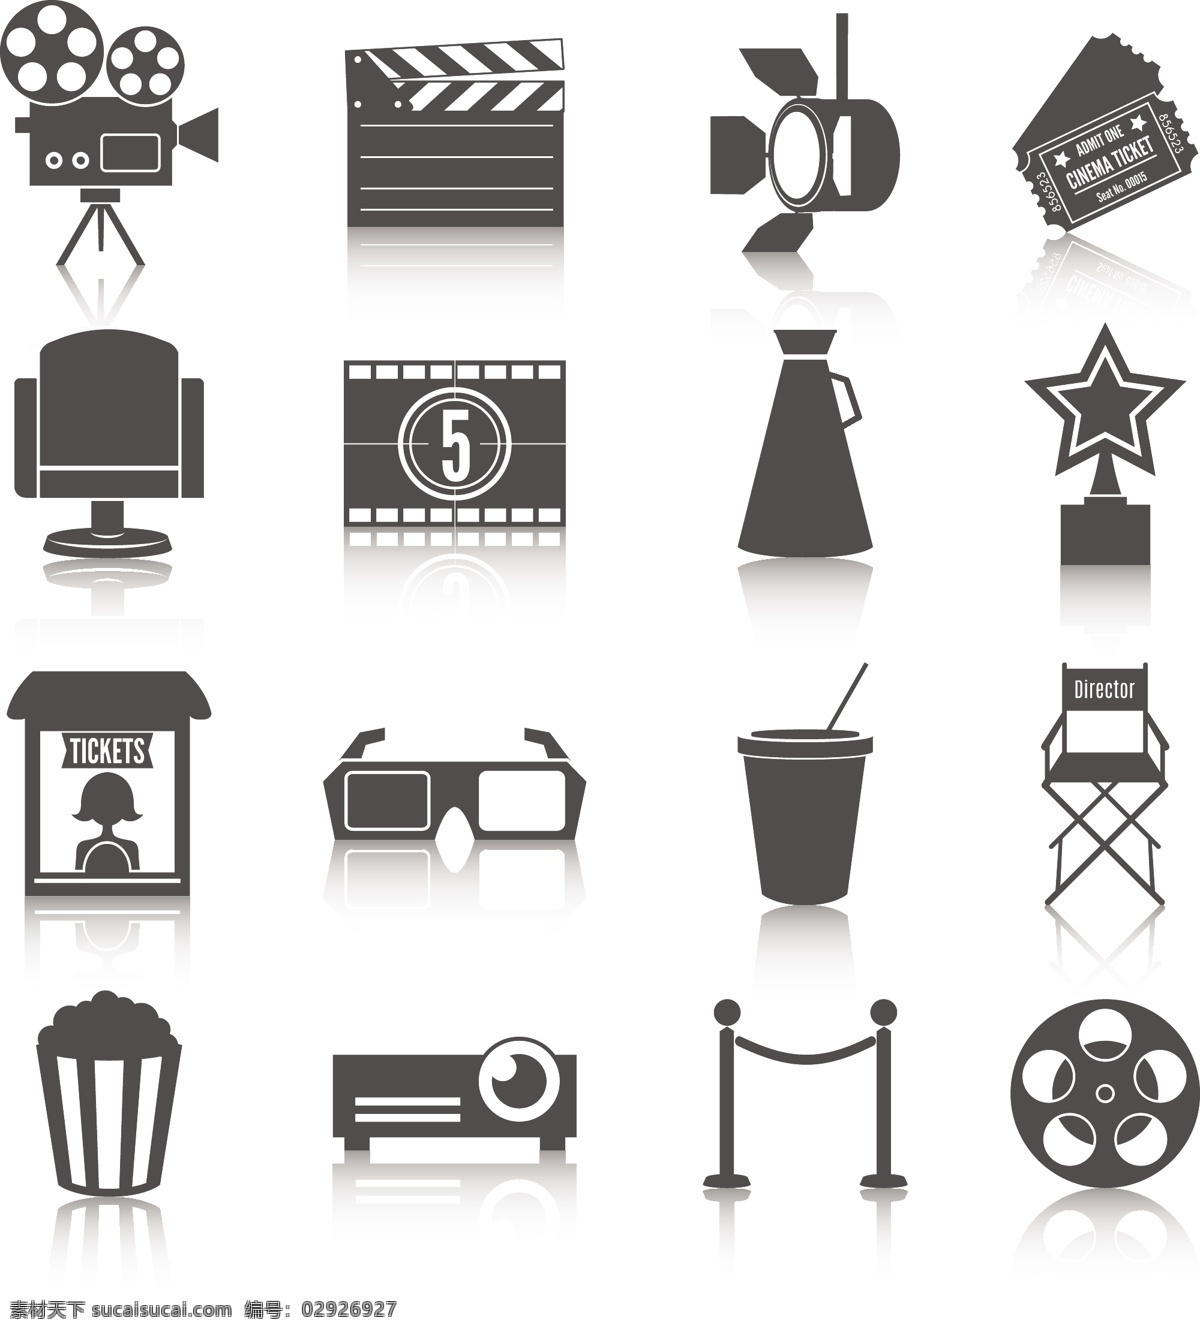 灰色电影图标 灰色 电影 图标 模板下载 影音娱乐 生活百科 矢量素材 白色